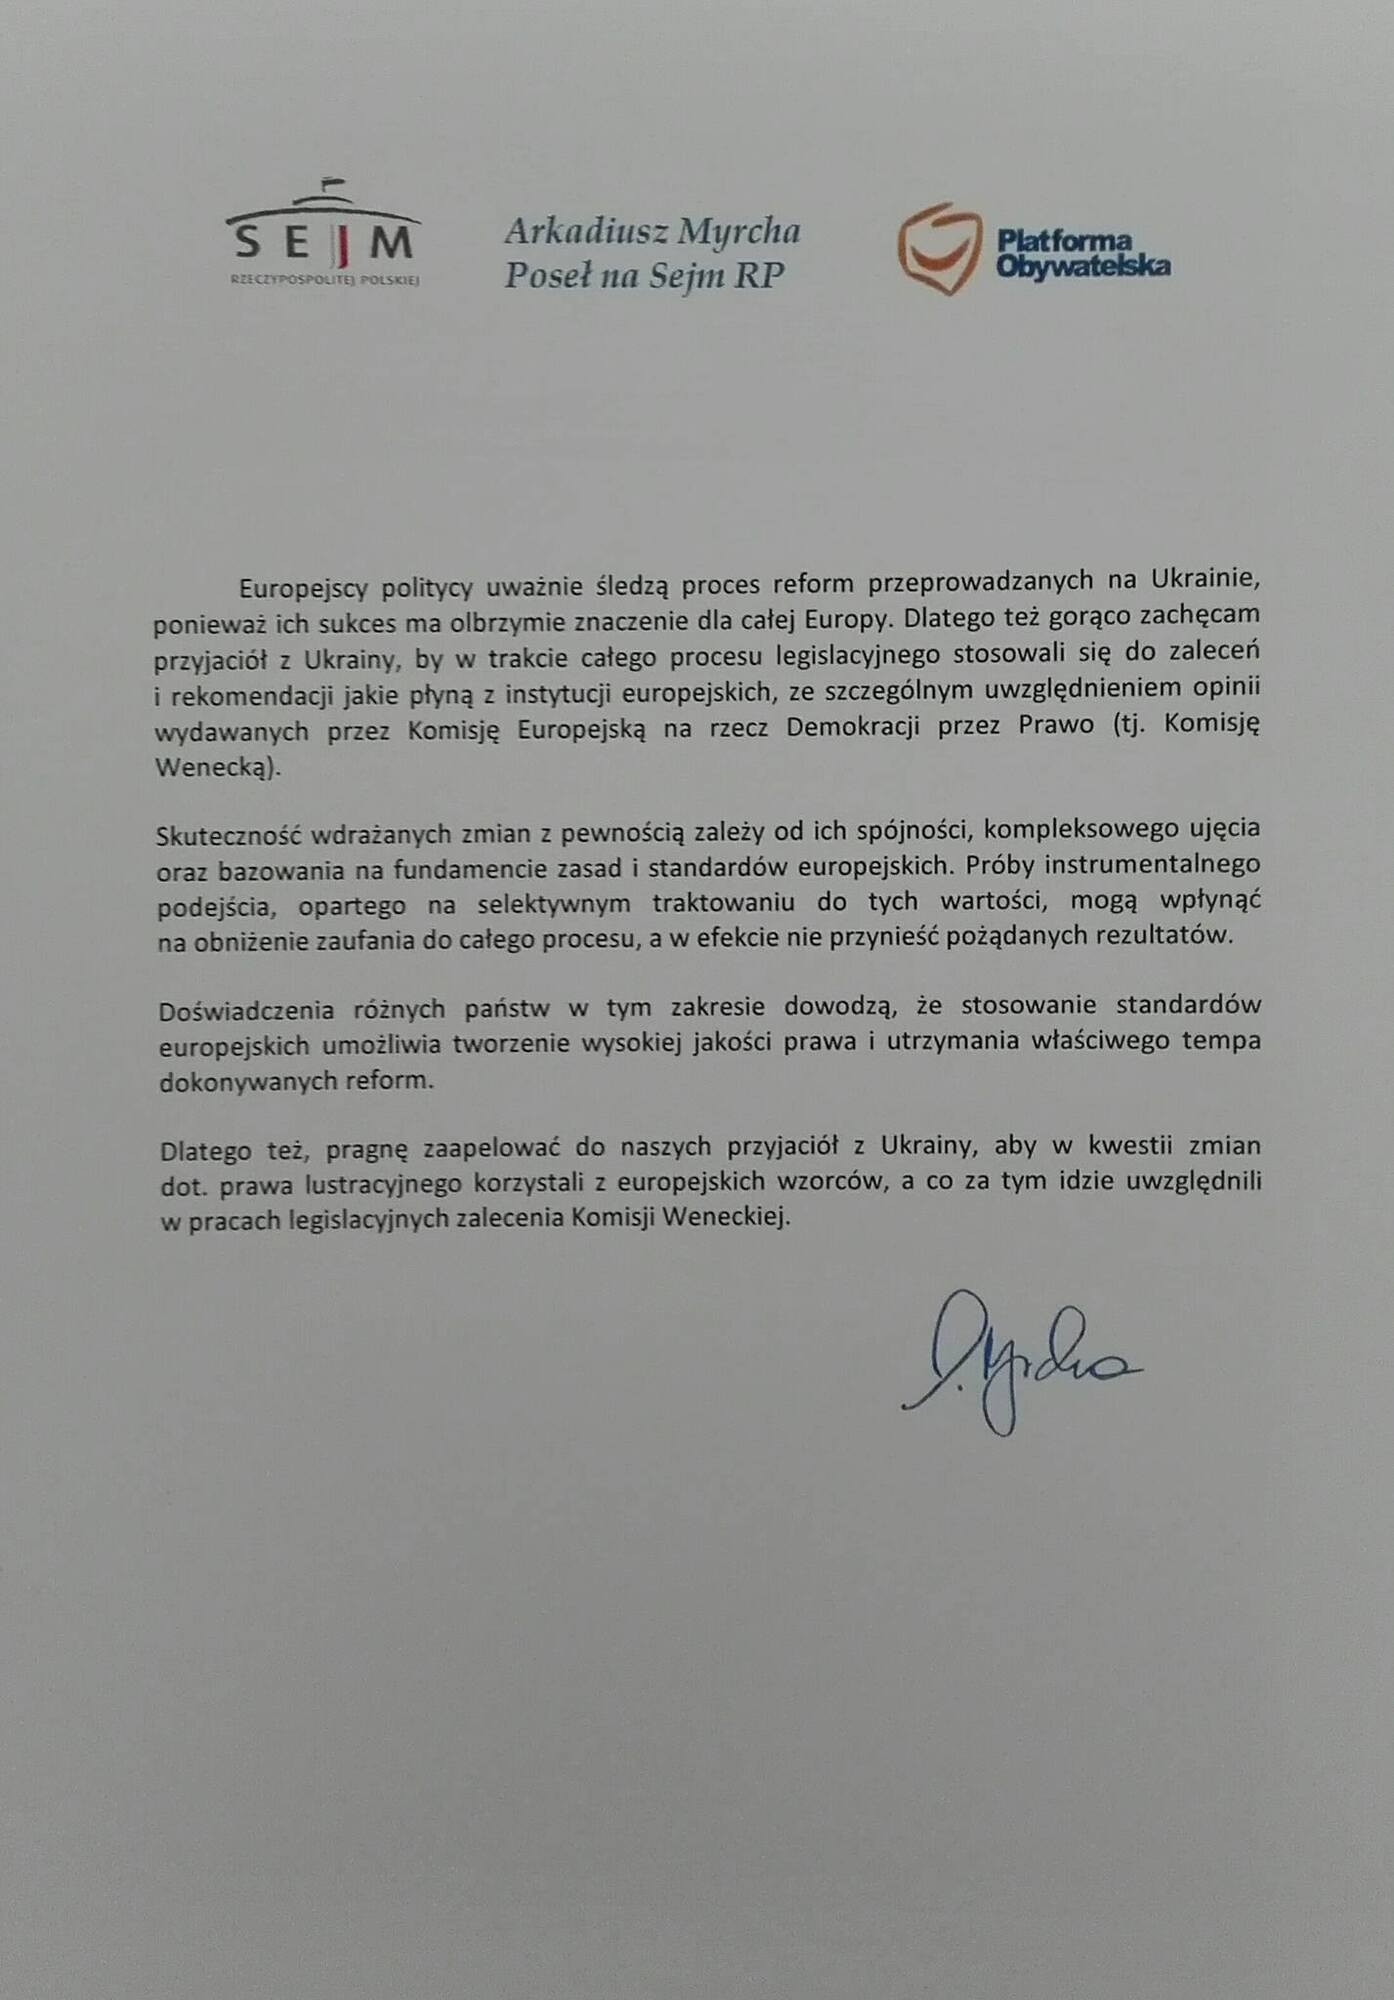 Польский депутат призывает Украину выполнить рекомендации Венецианской комиссии по закону о люстрации